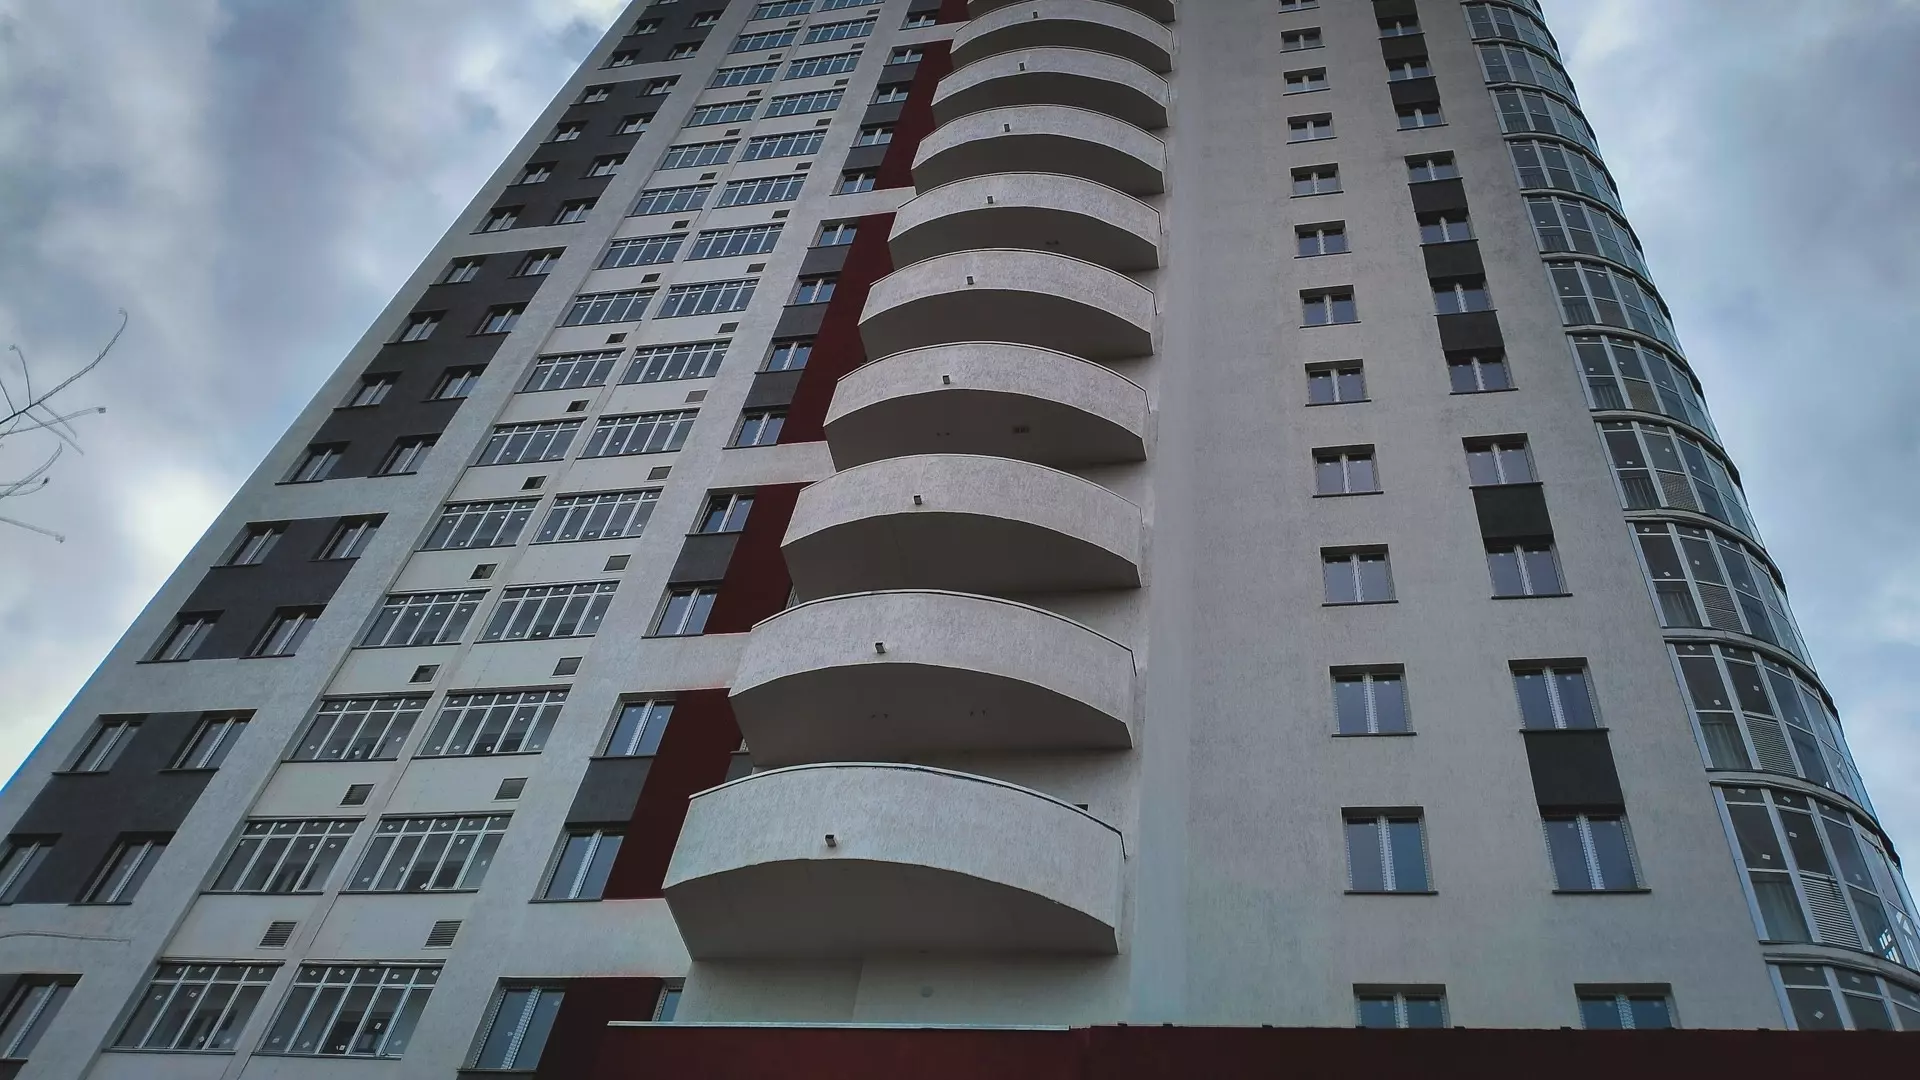 Мужчины в Екатеринбурге сломали ноги при попытке побега из окна квартиры